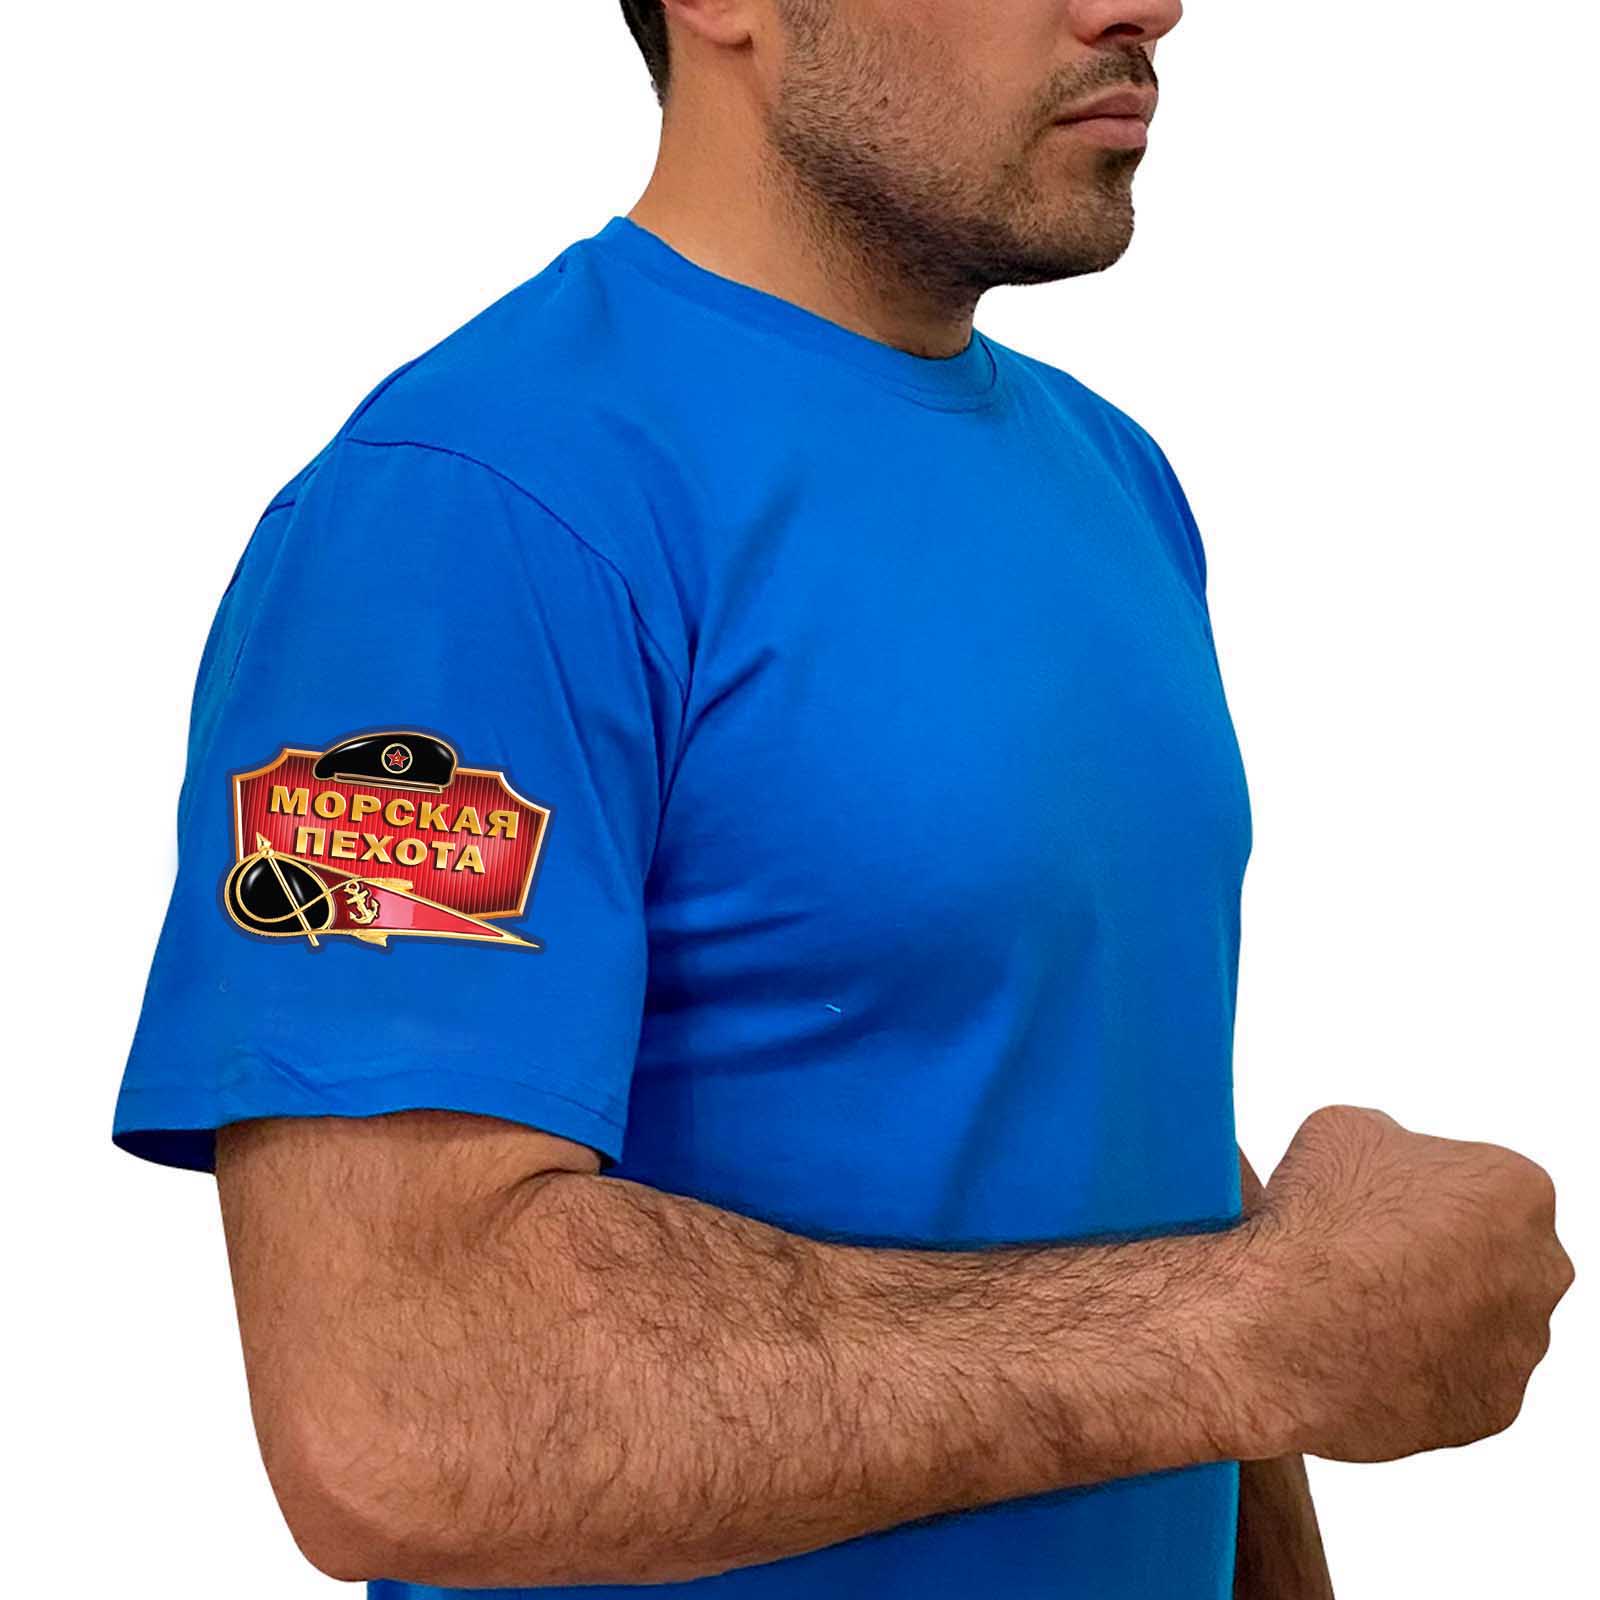 Васильковая футболка с термотрансфером "Морская пехота" на рукаве